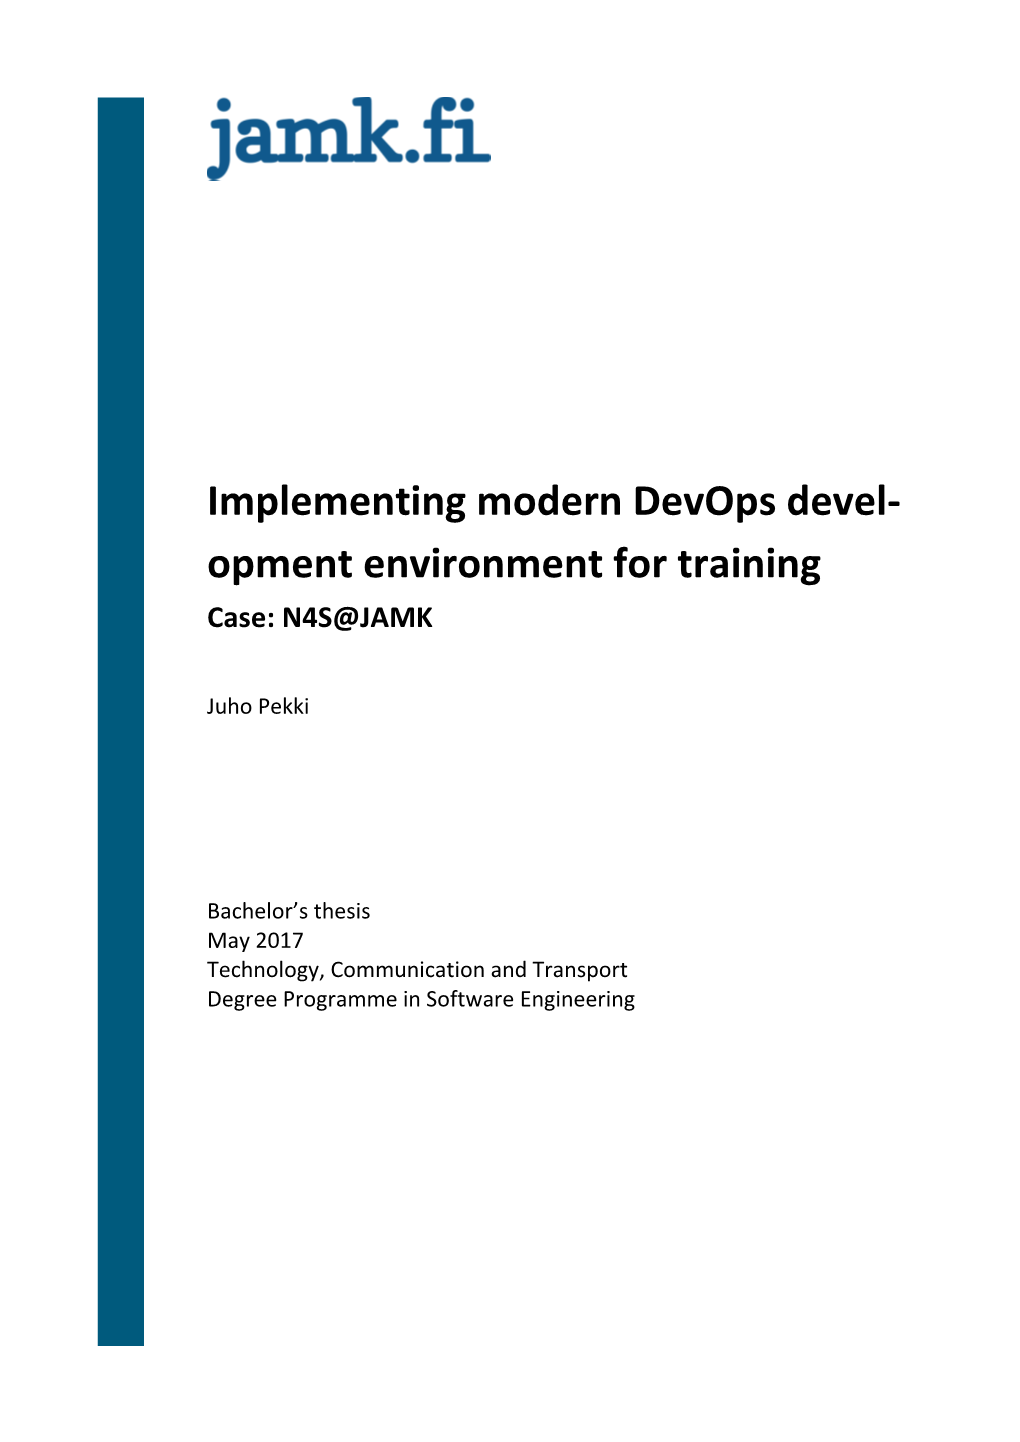 Implementing Modern Devops Devel- Opment Environment for Training Case: N4S@JAMK